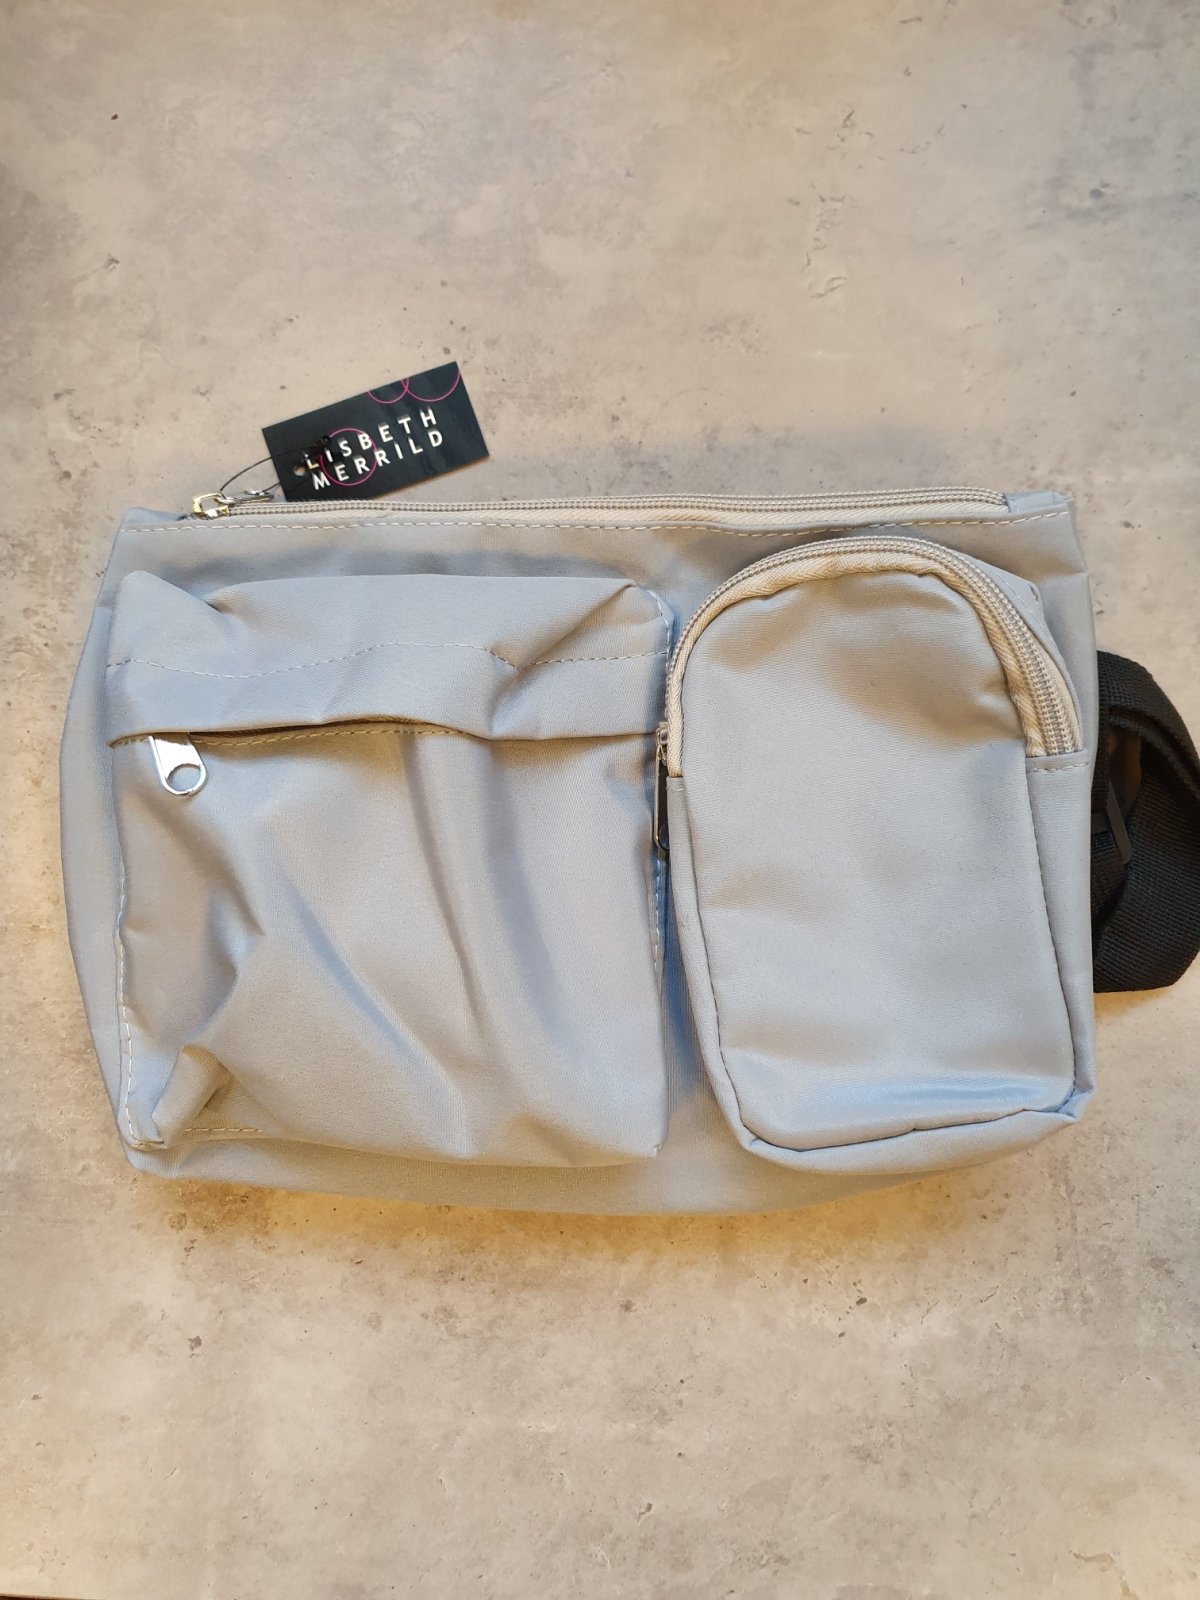 Crossover taske i grå nylon fra Lisbeth Merrild 249 kr.